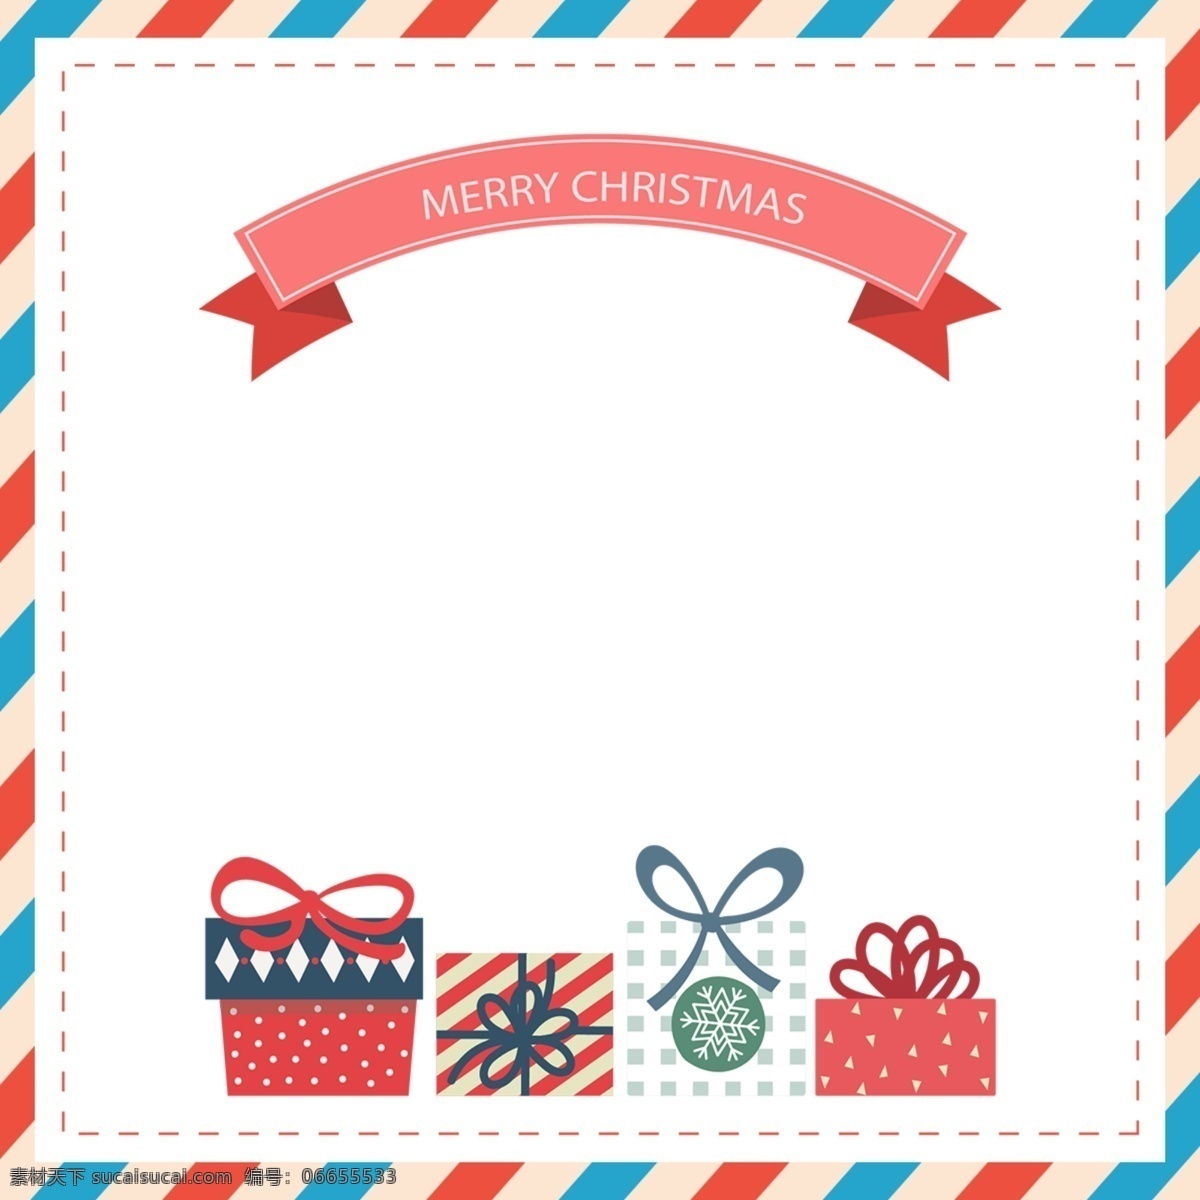 圣诞节 圣诞 背景 一个 清晰 模式 简单 阳光 丝绸 礼物 盒子